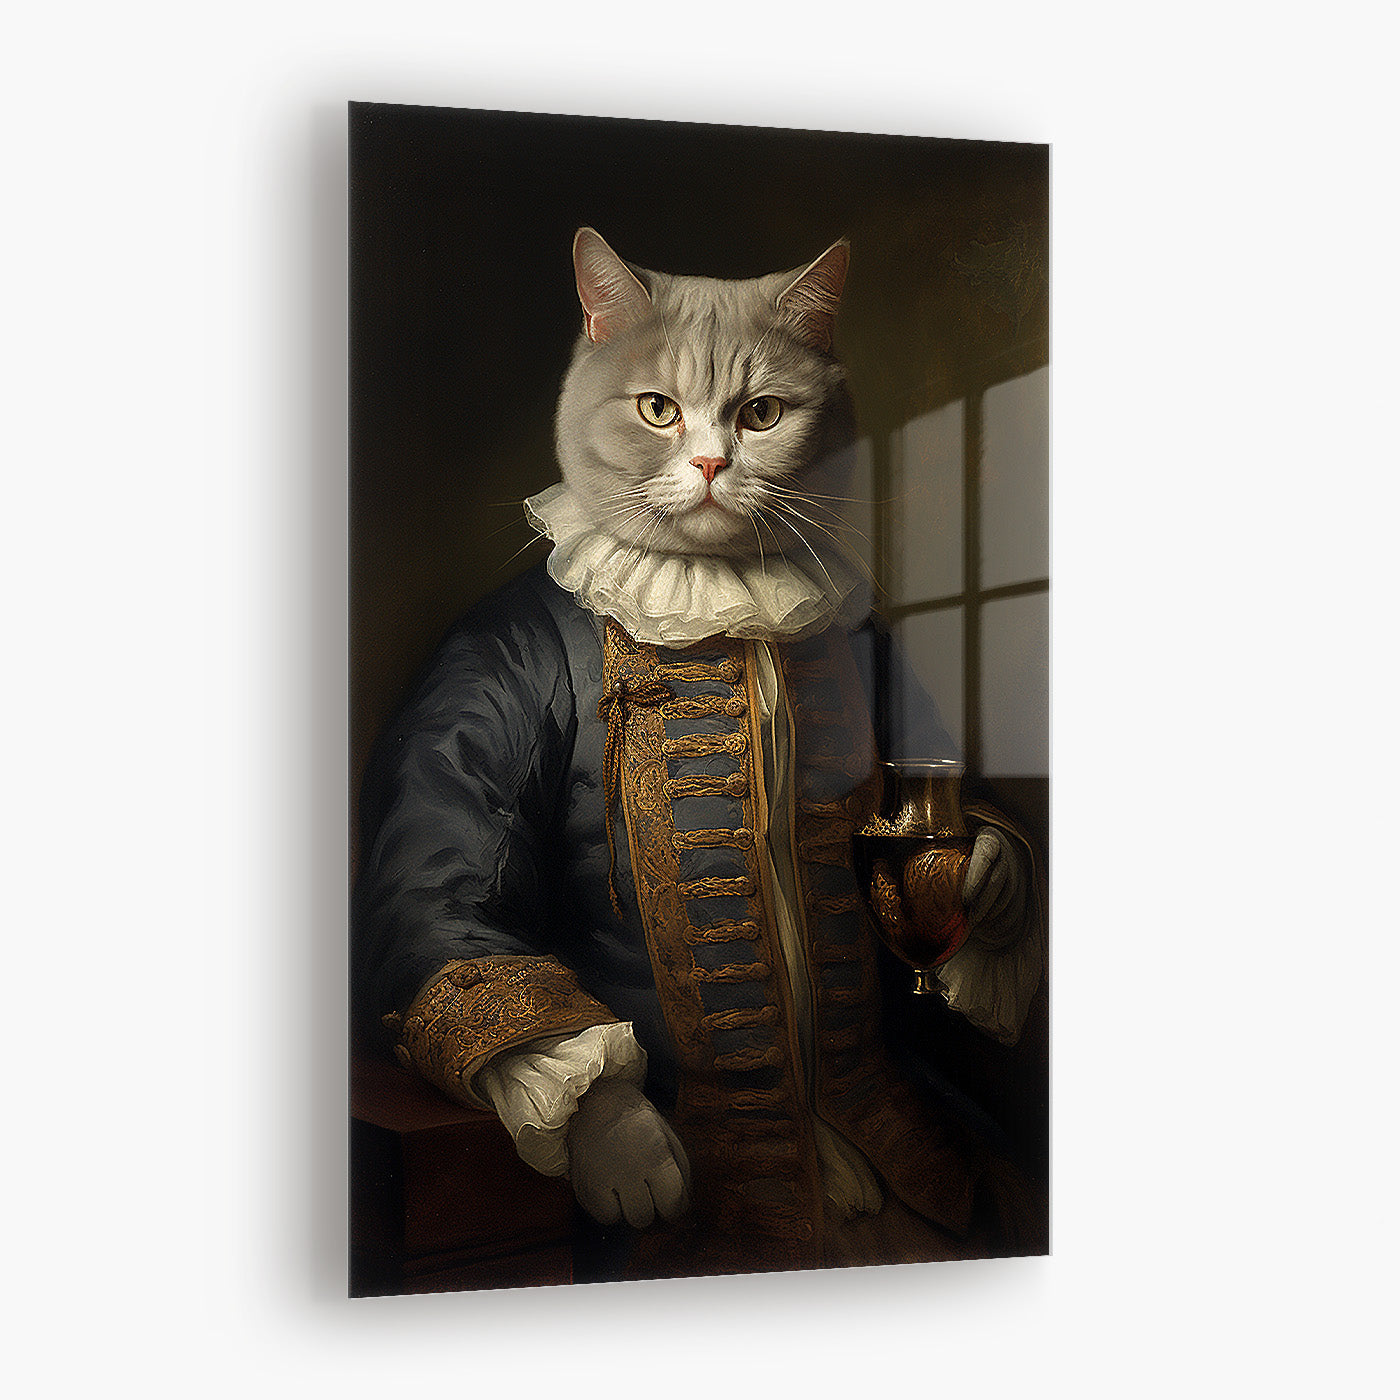 Napoleon the Catman